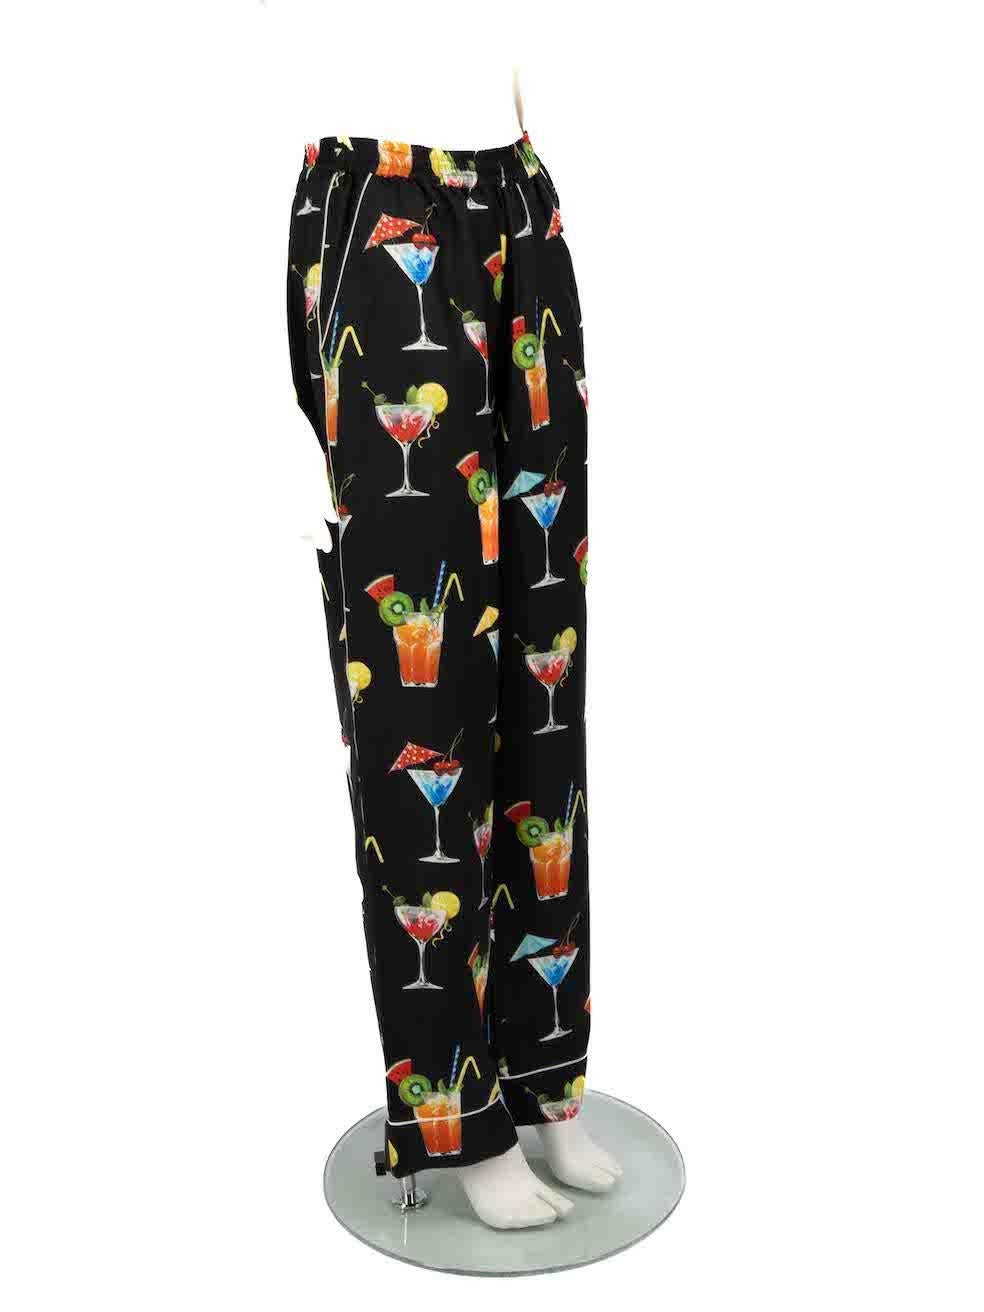 CONDITION ist nie getragen. Keine sichtbaren Abnutzungserscheinungen an der Hose sind an diesem neuen Dolce & Gabbana Designer-Wiederverkaufsartikel zu erkennen.
 
 
 
 Einzelheiten
 
 
 Multicolour-Schwarzton
 
 Seide
 
 Pyjamahose
 
 Cocktail